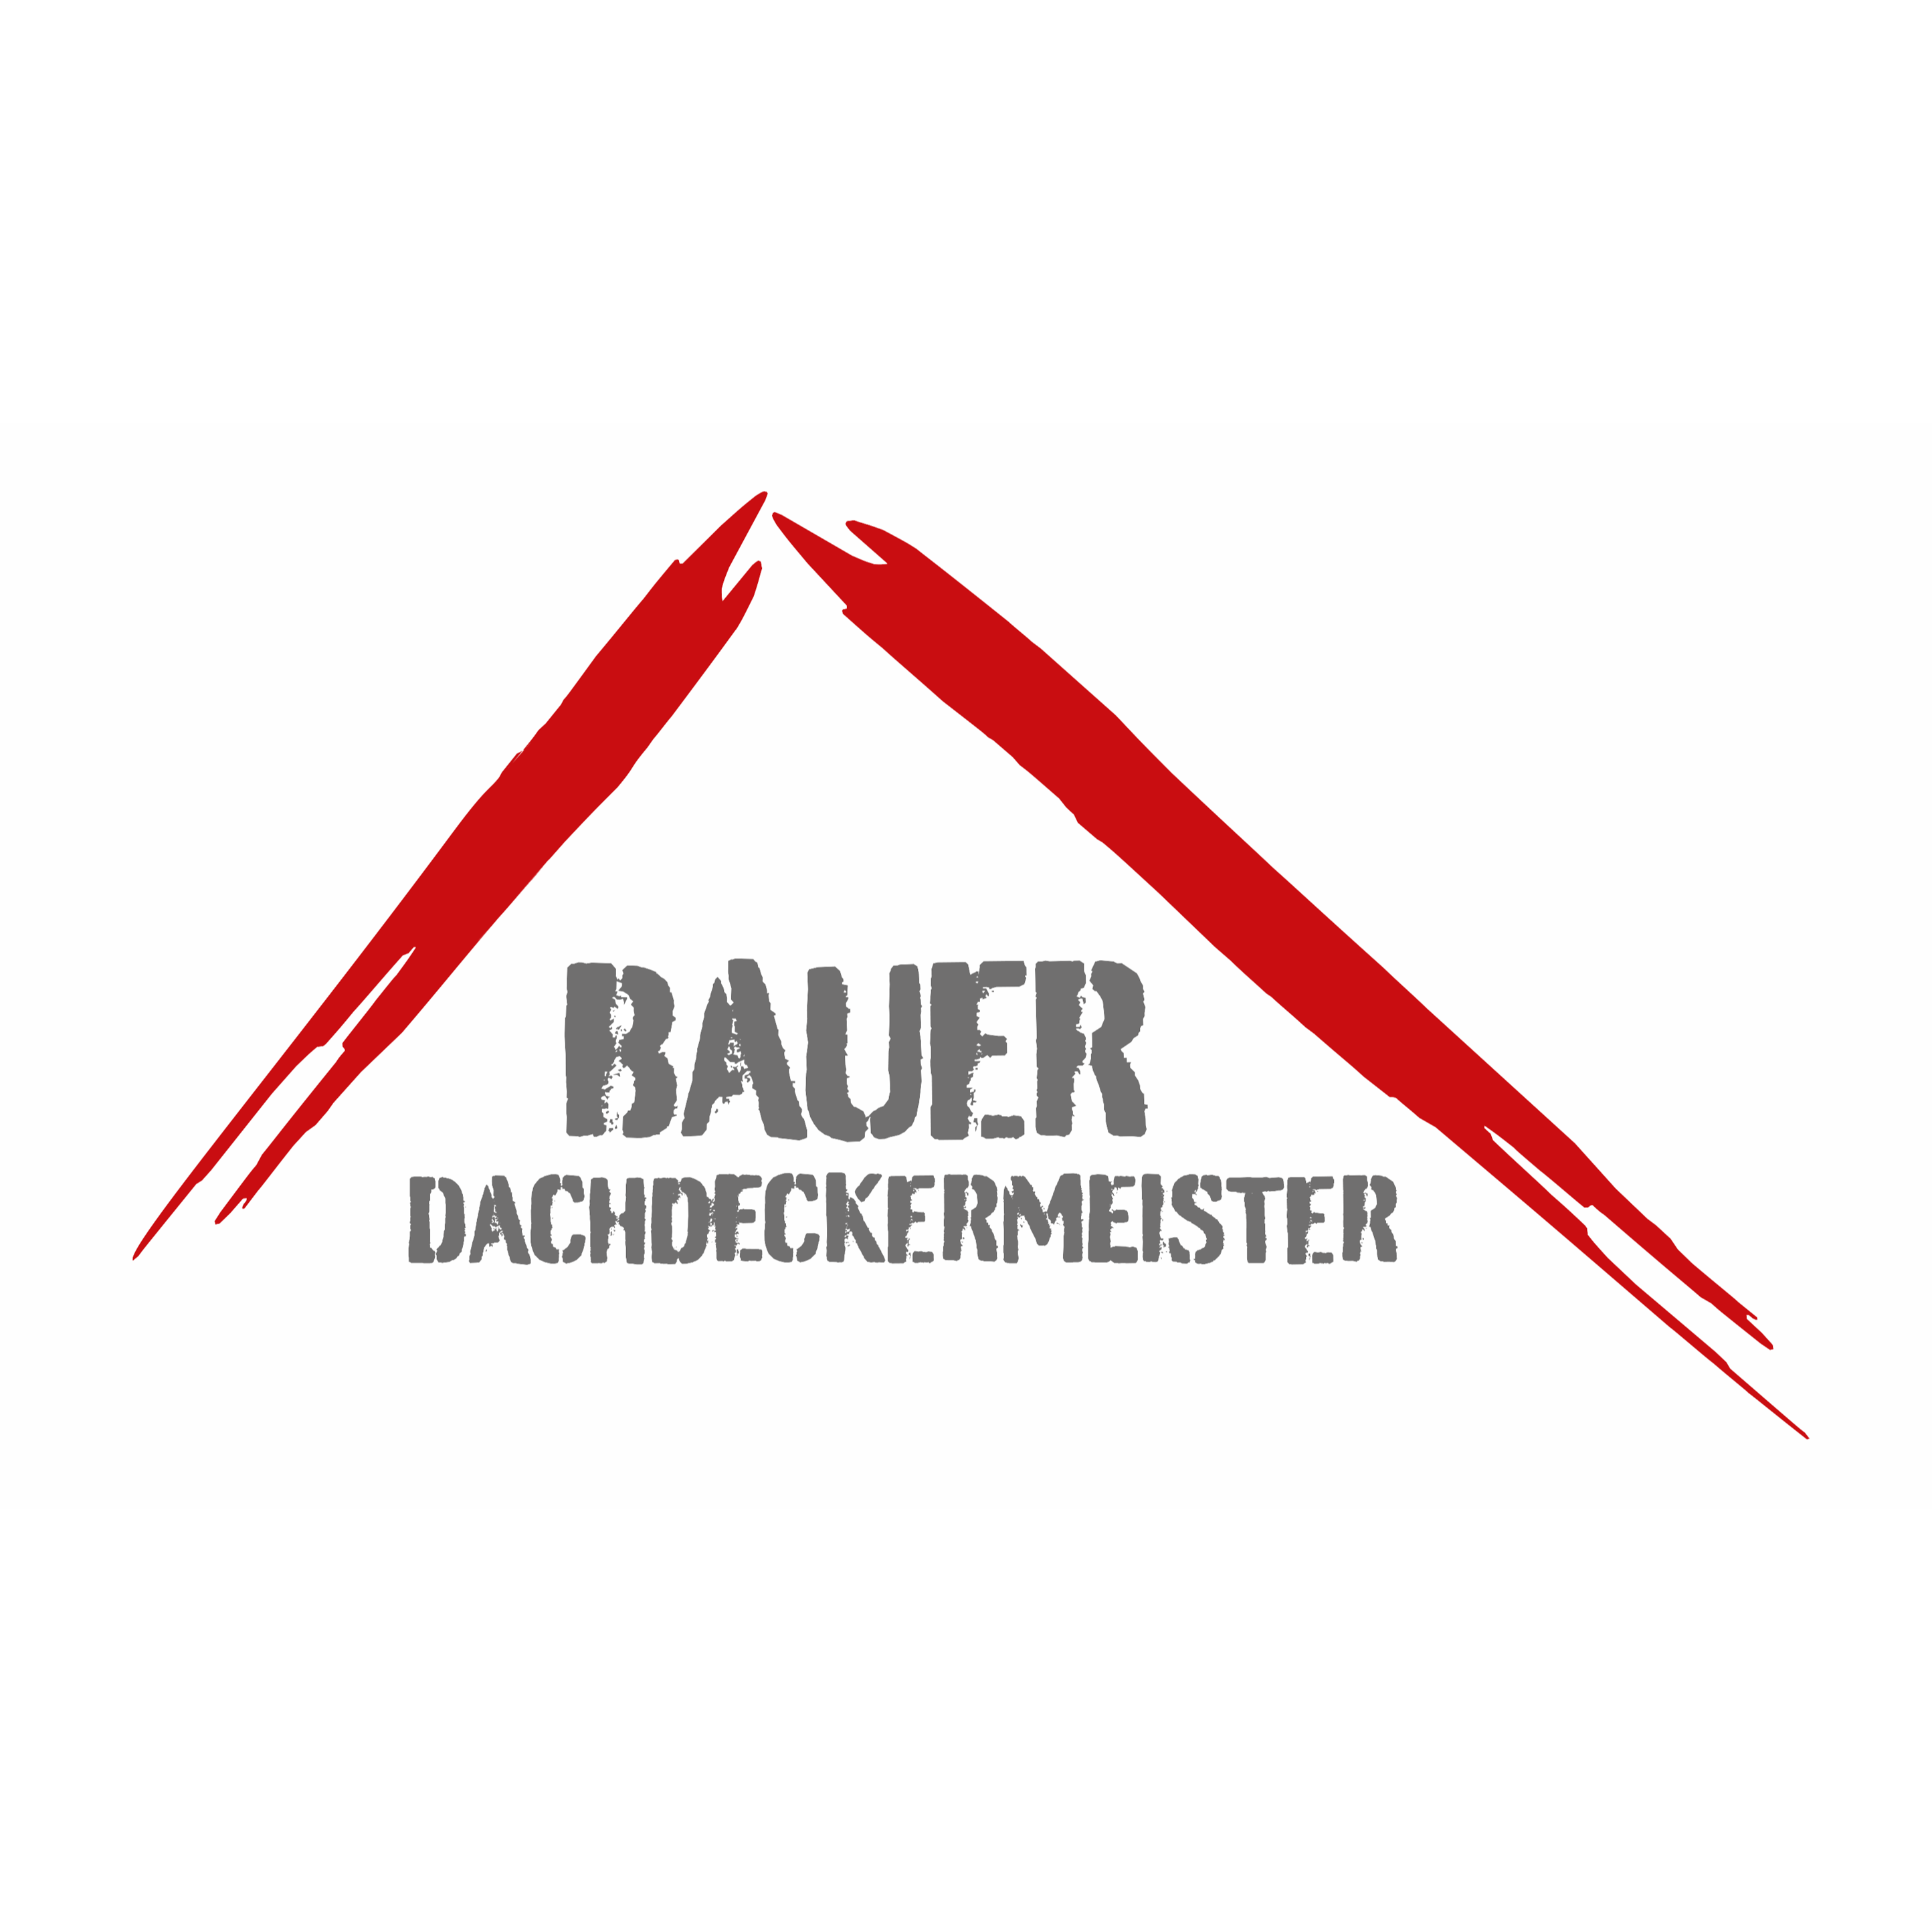 Logo von Bauer Bedachungen